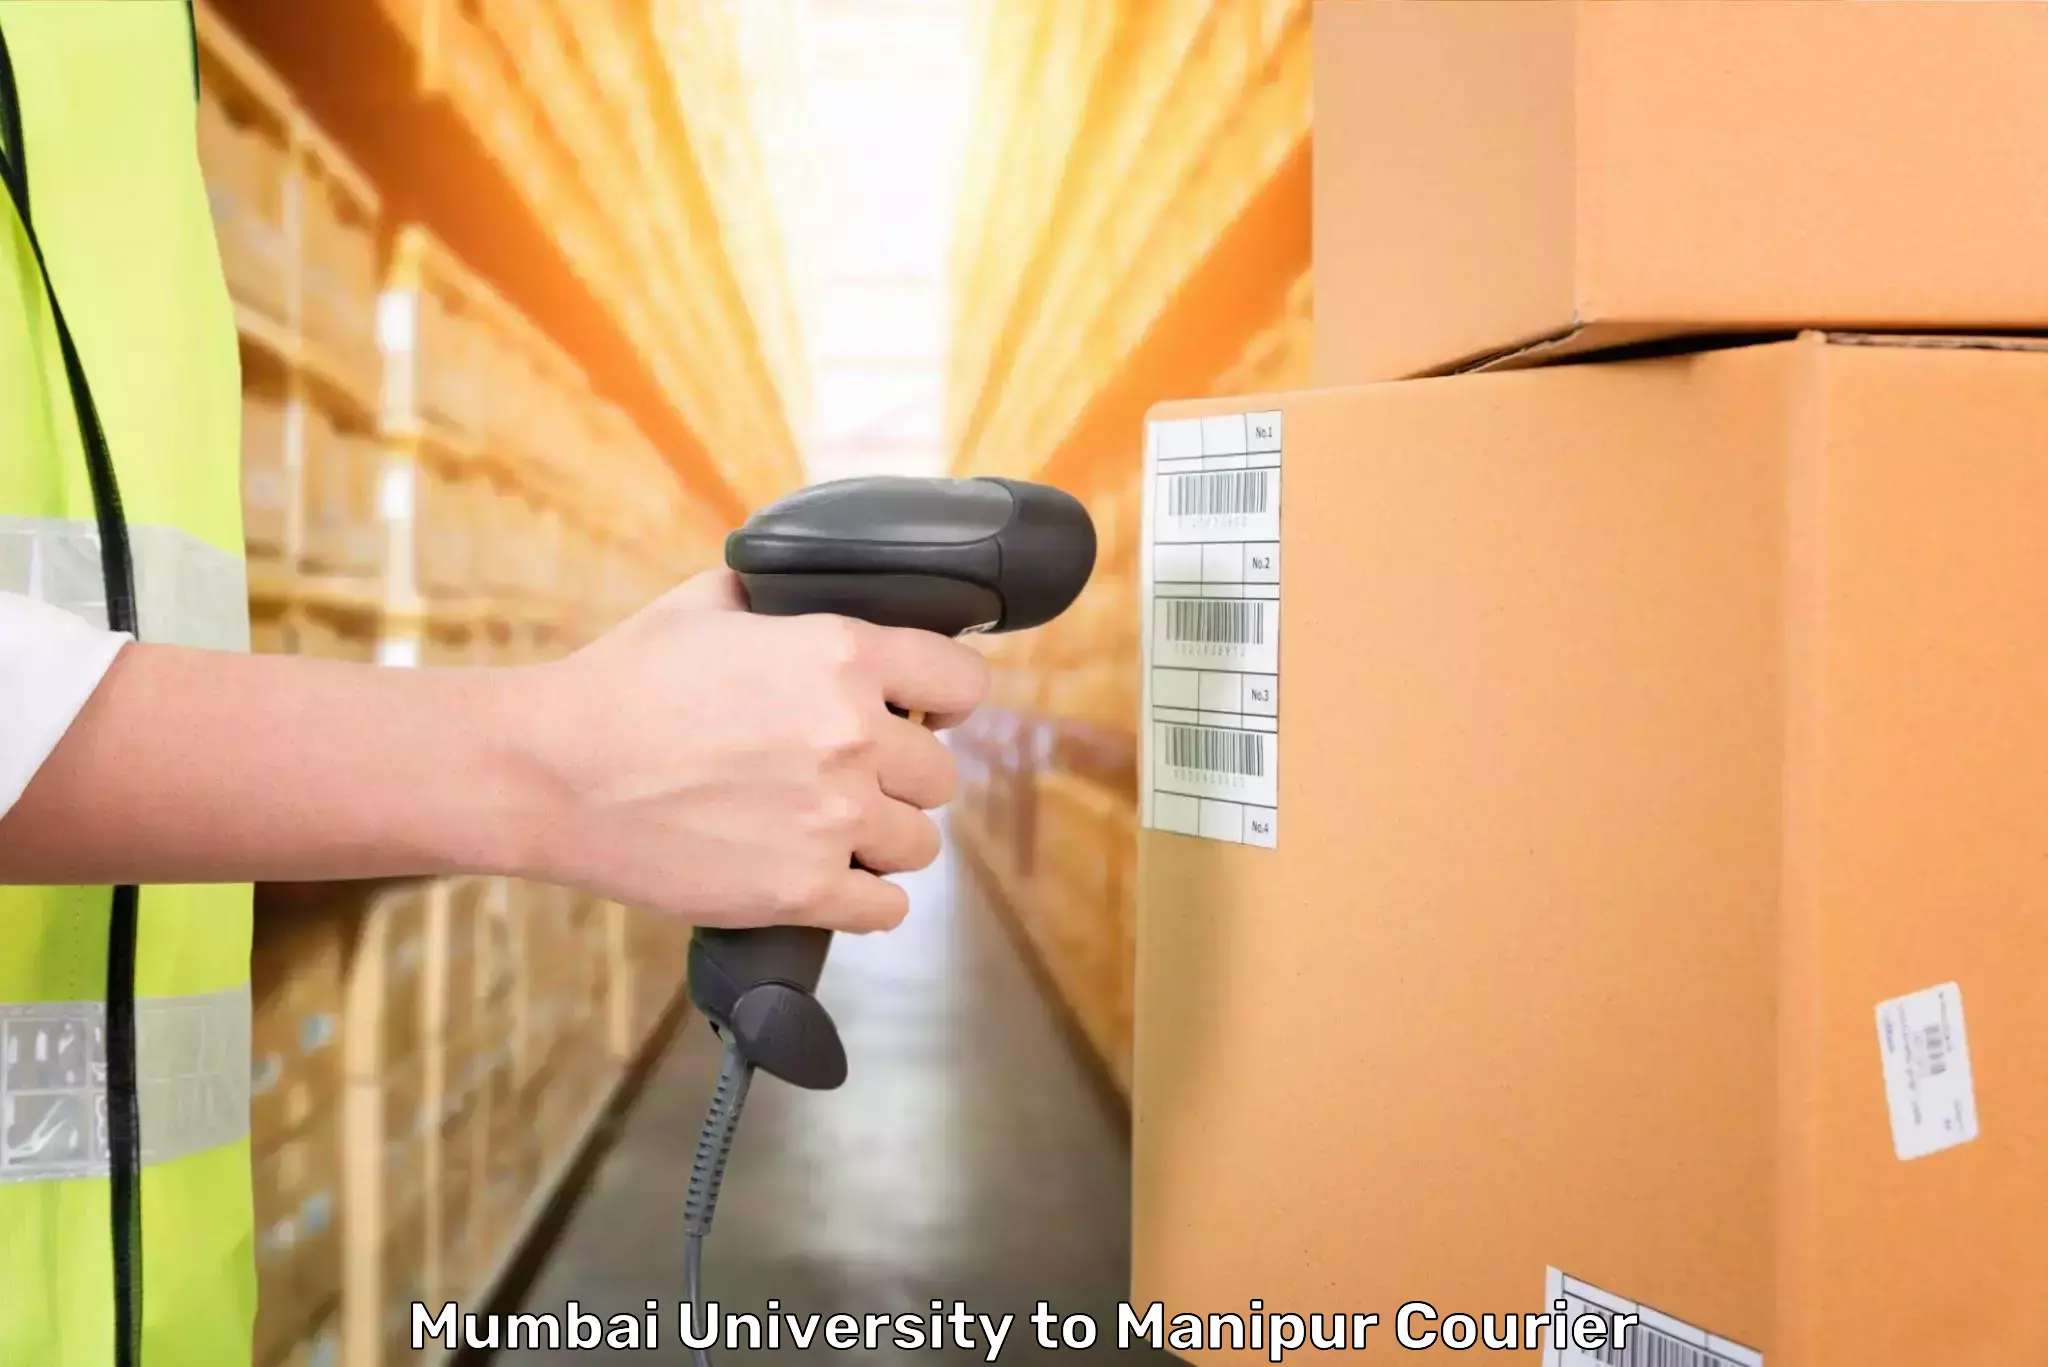 Baggage transport network Mumbai University to Kanti